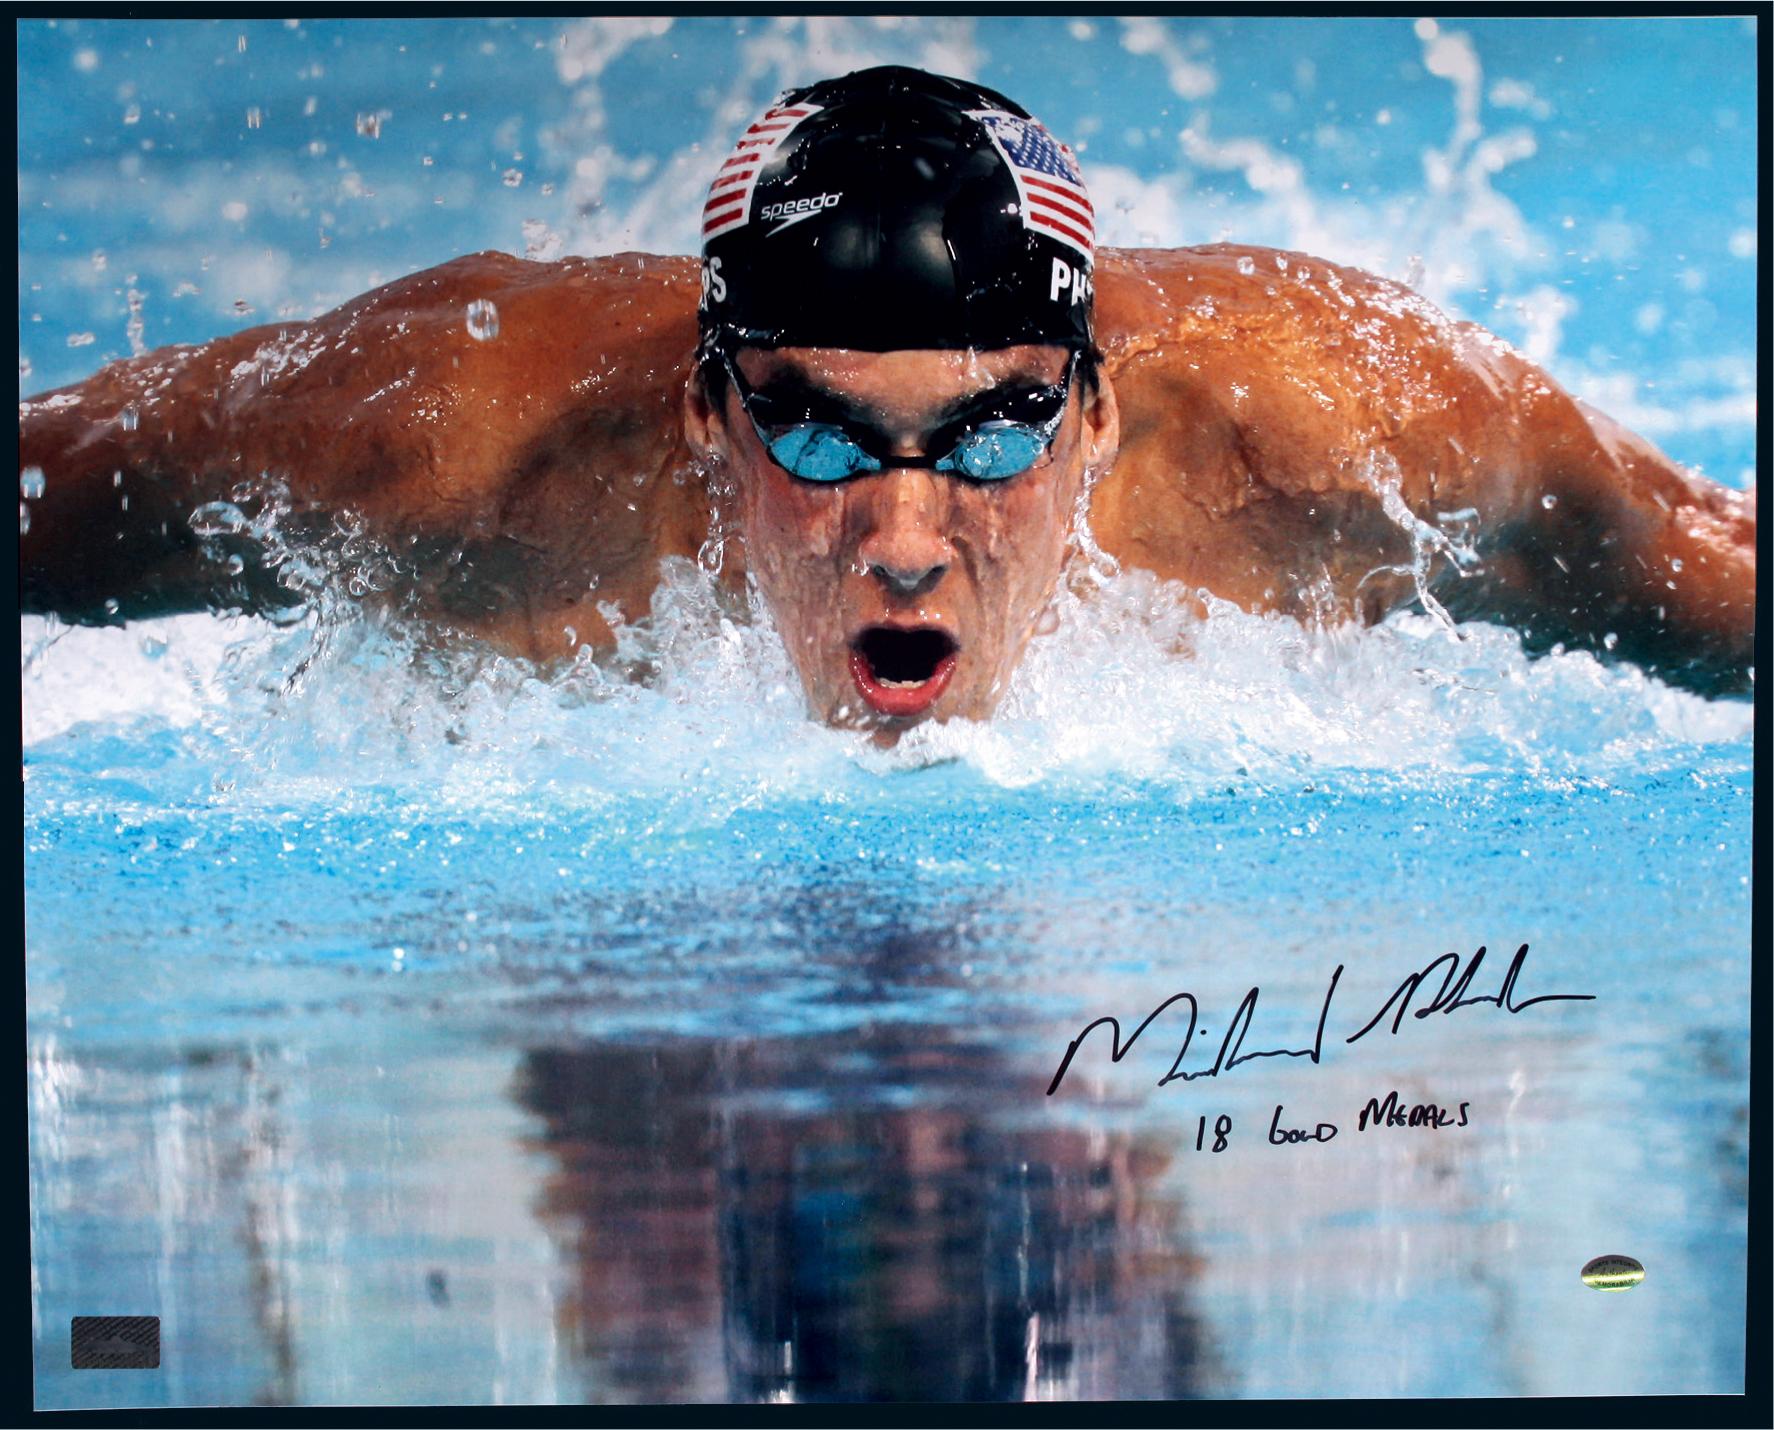 11137 泳坛巨星菲尔普斯(michael phelps)亲笔签名大照片,附证书